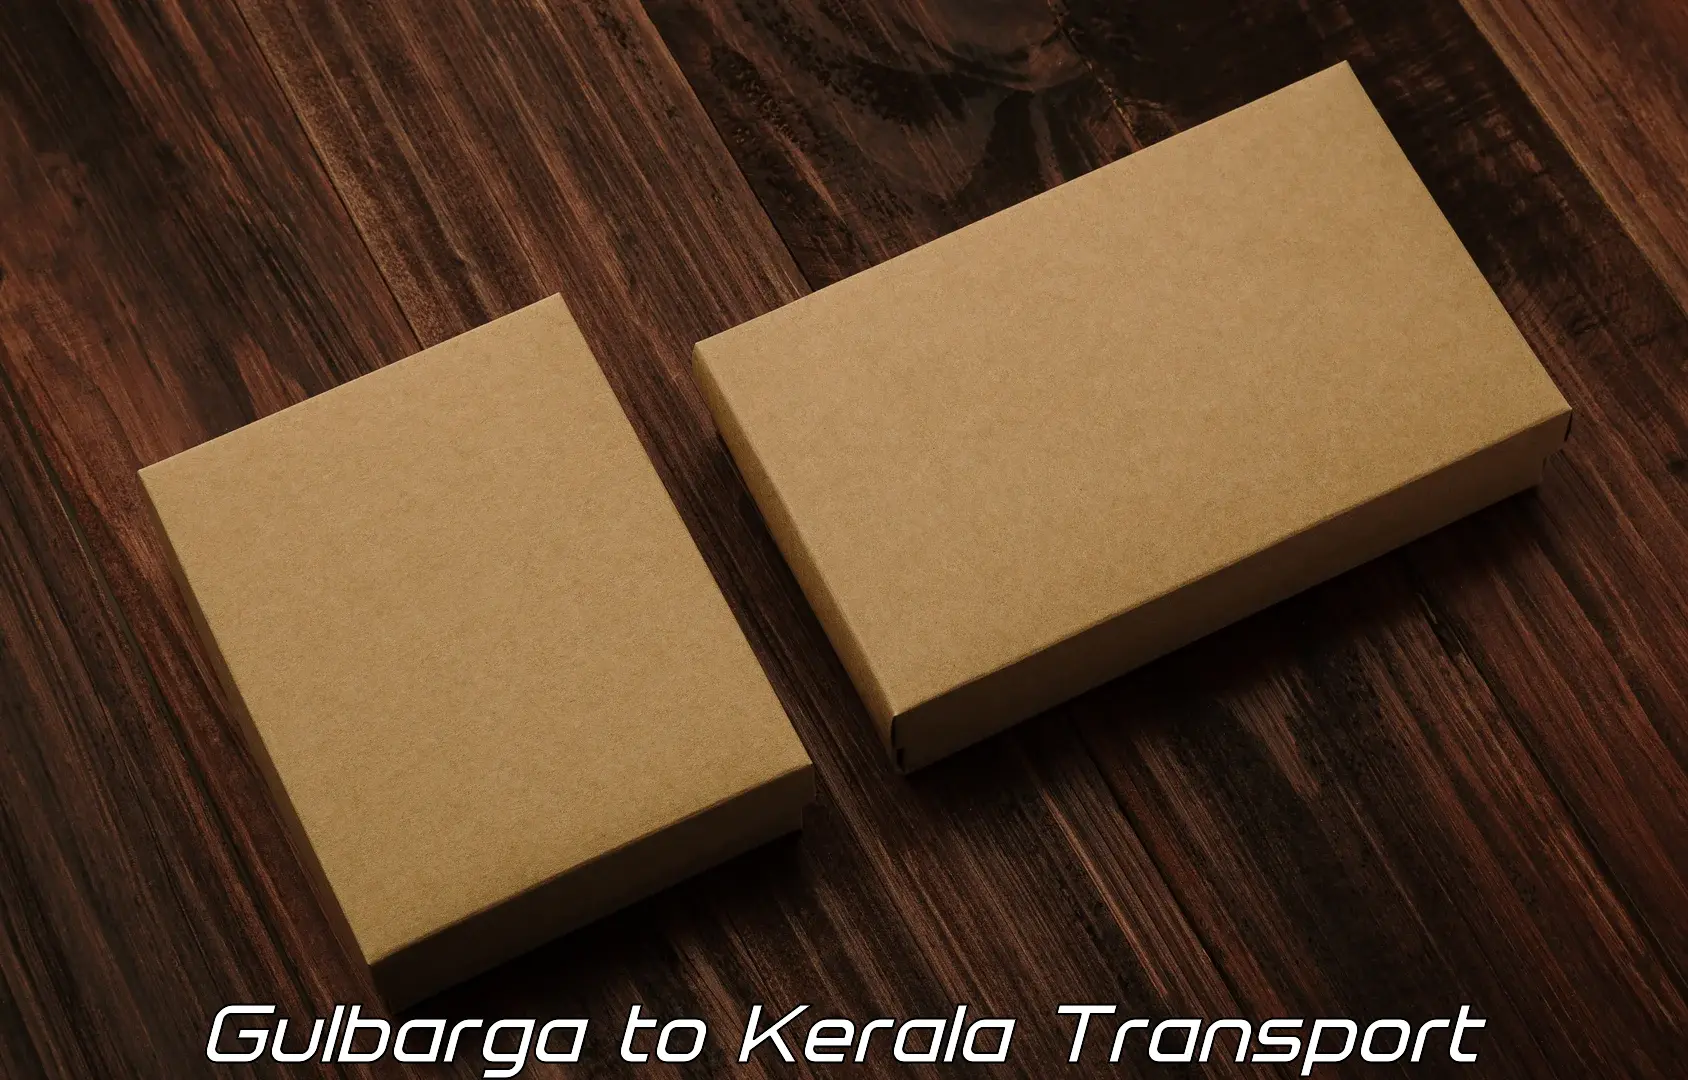 Transport services Gulbarga to Kerala